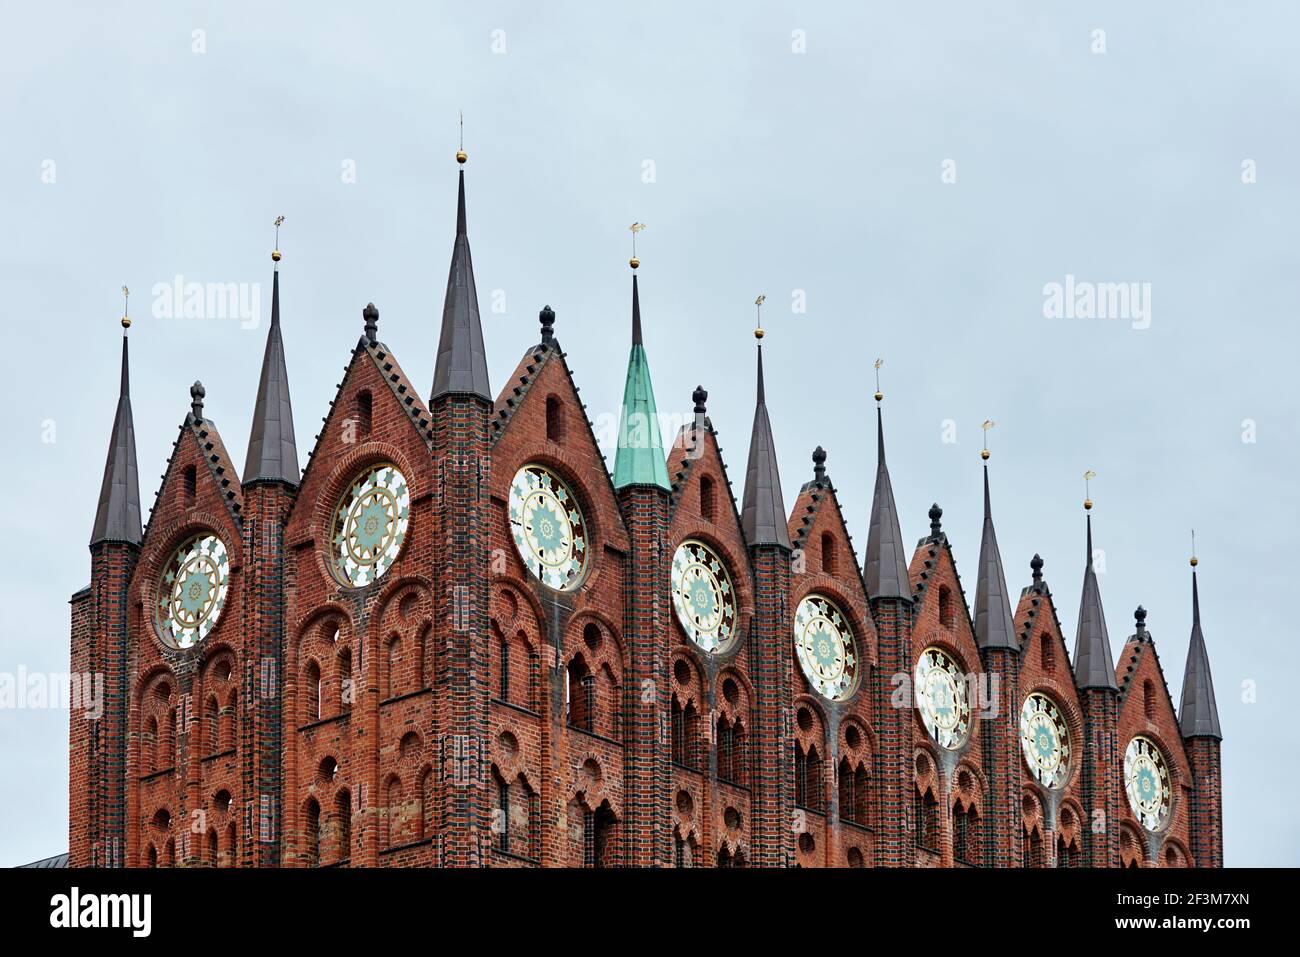 Rathaus in Stralsund Stock Photo